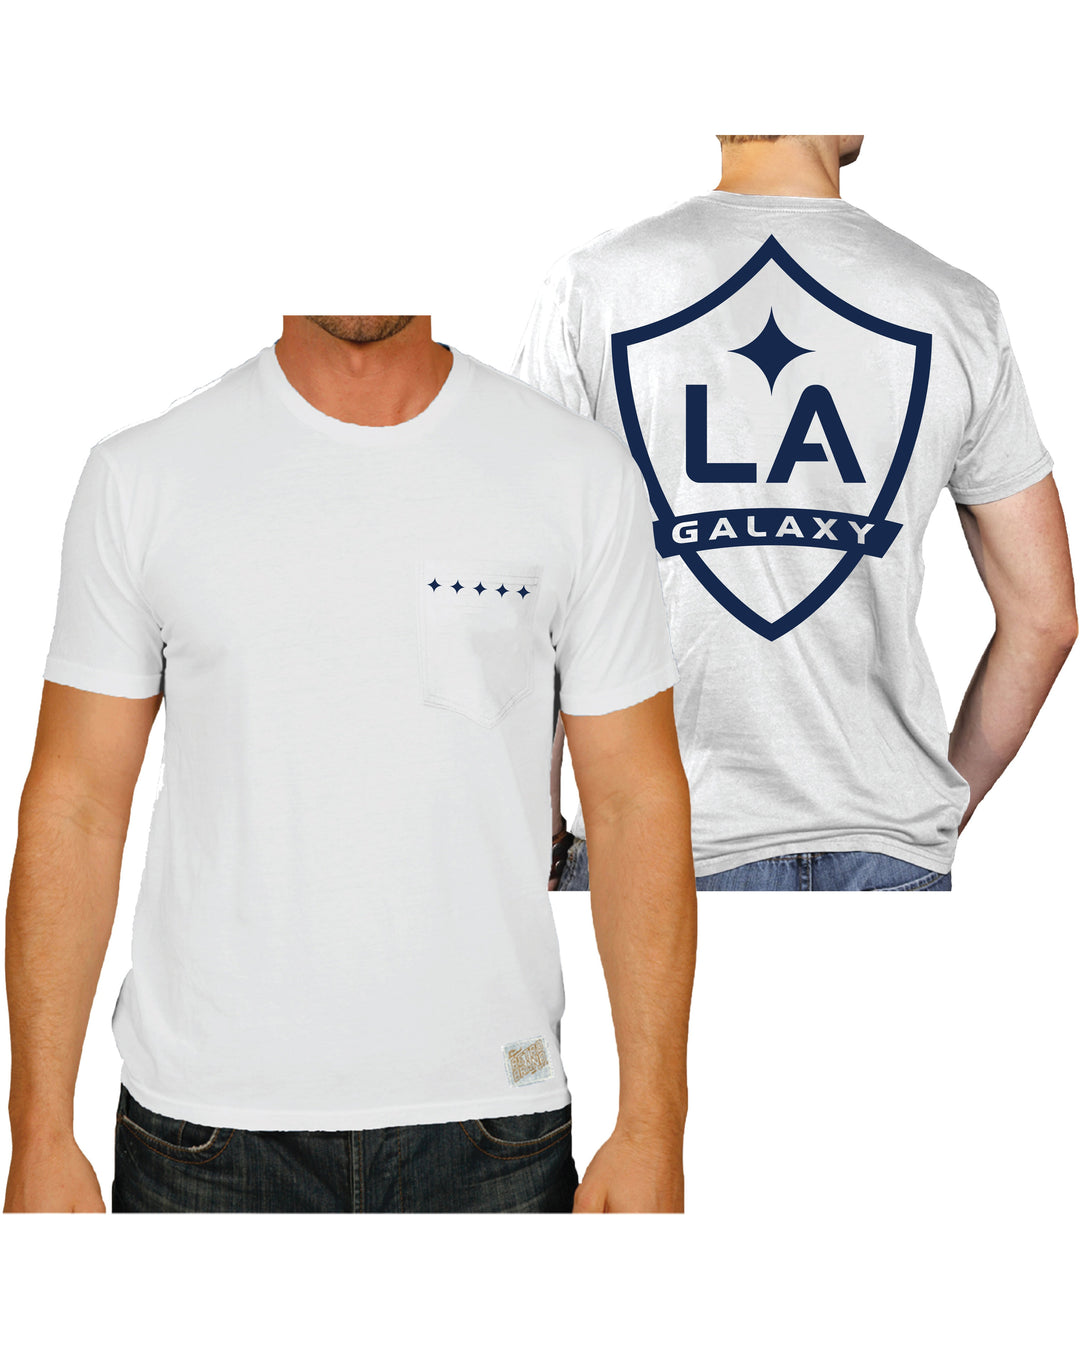 Lv Galaxy T-shirt